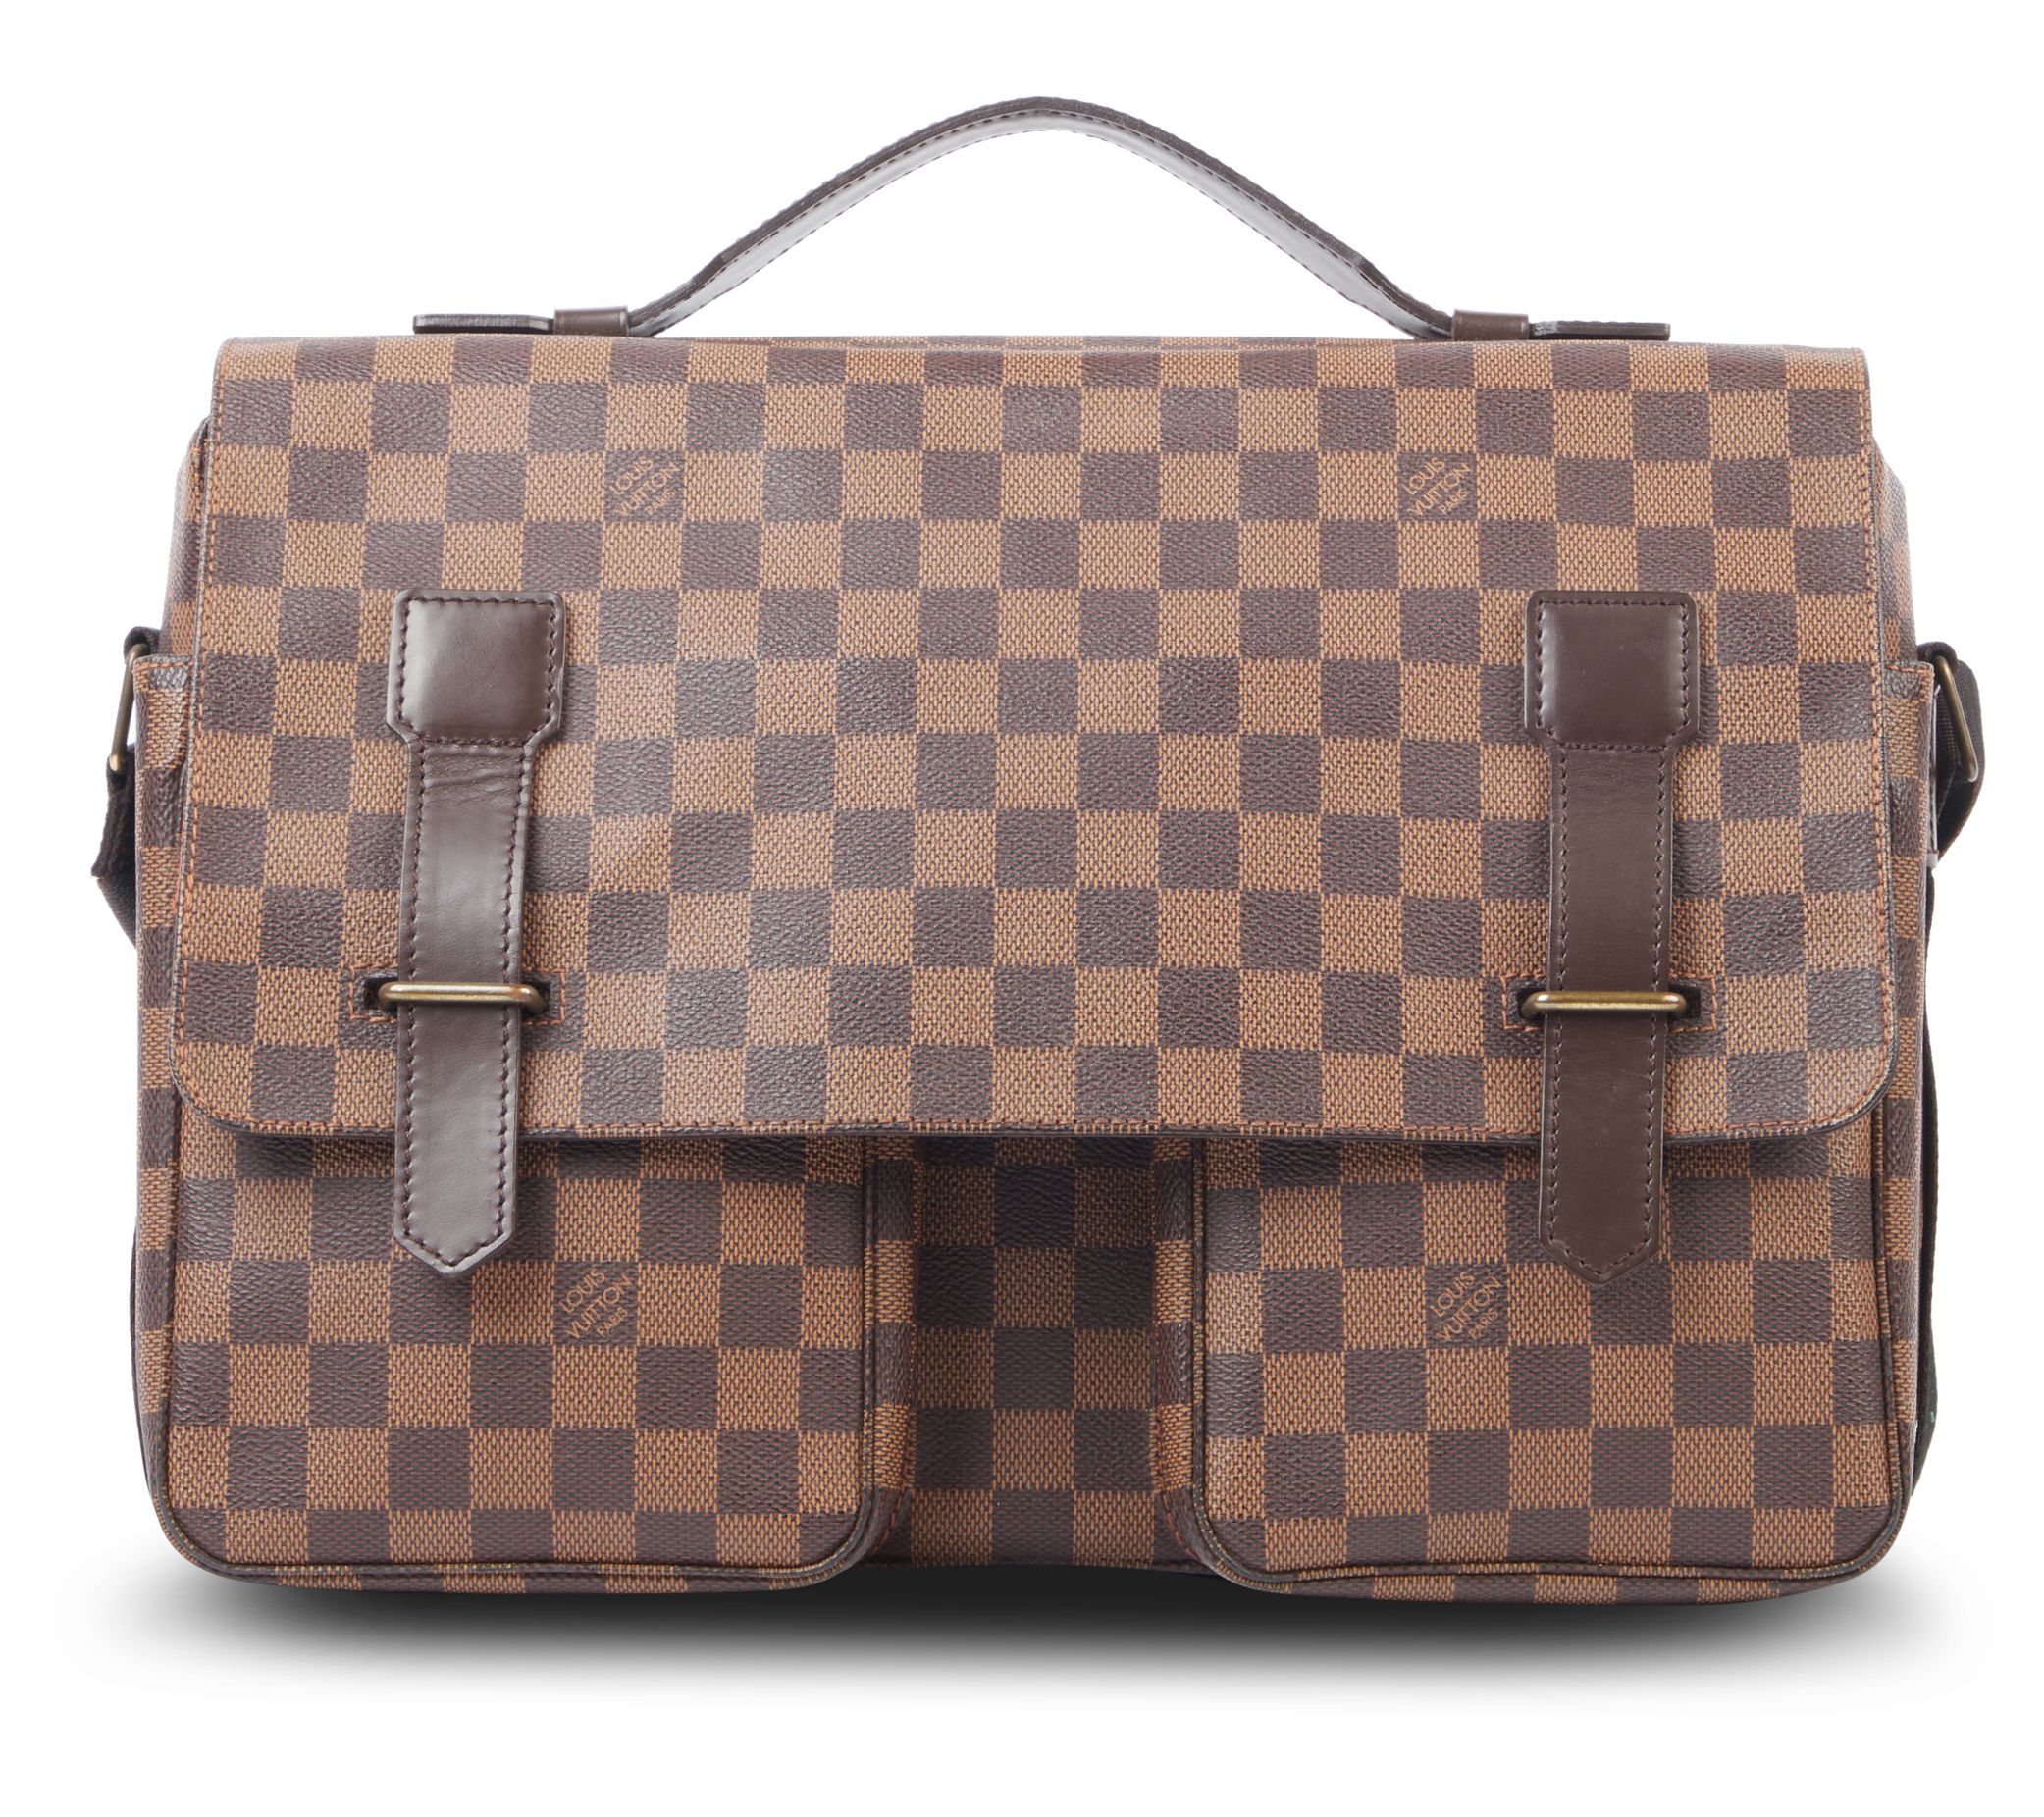 Louis Vuitton Damier Azur Naviglio - Neutrals Crossbody Bags